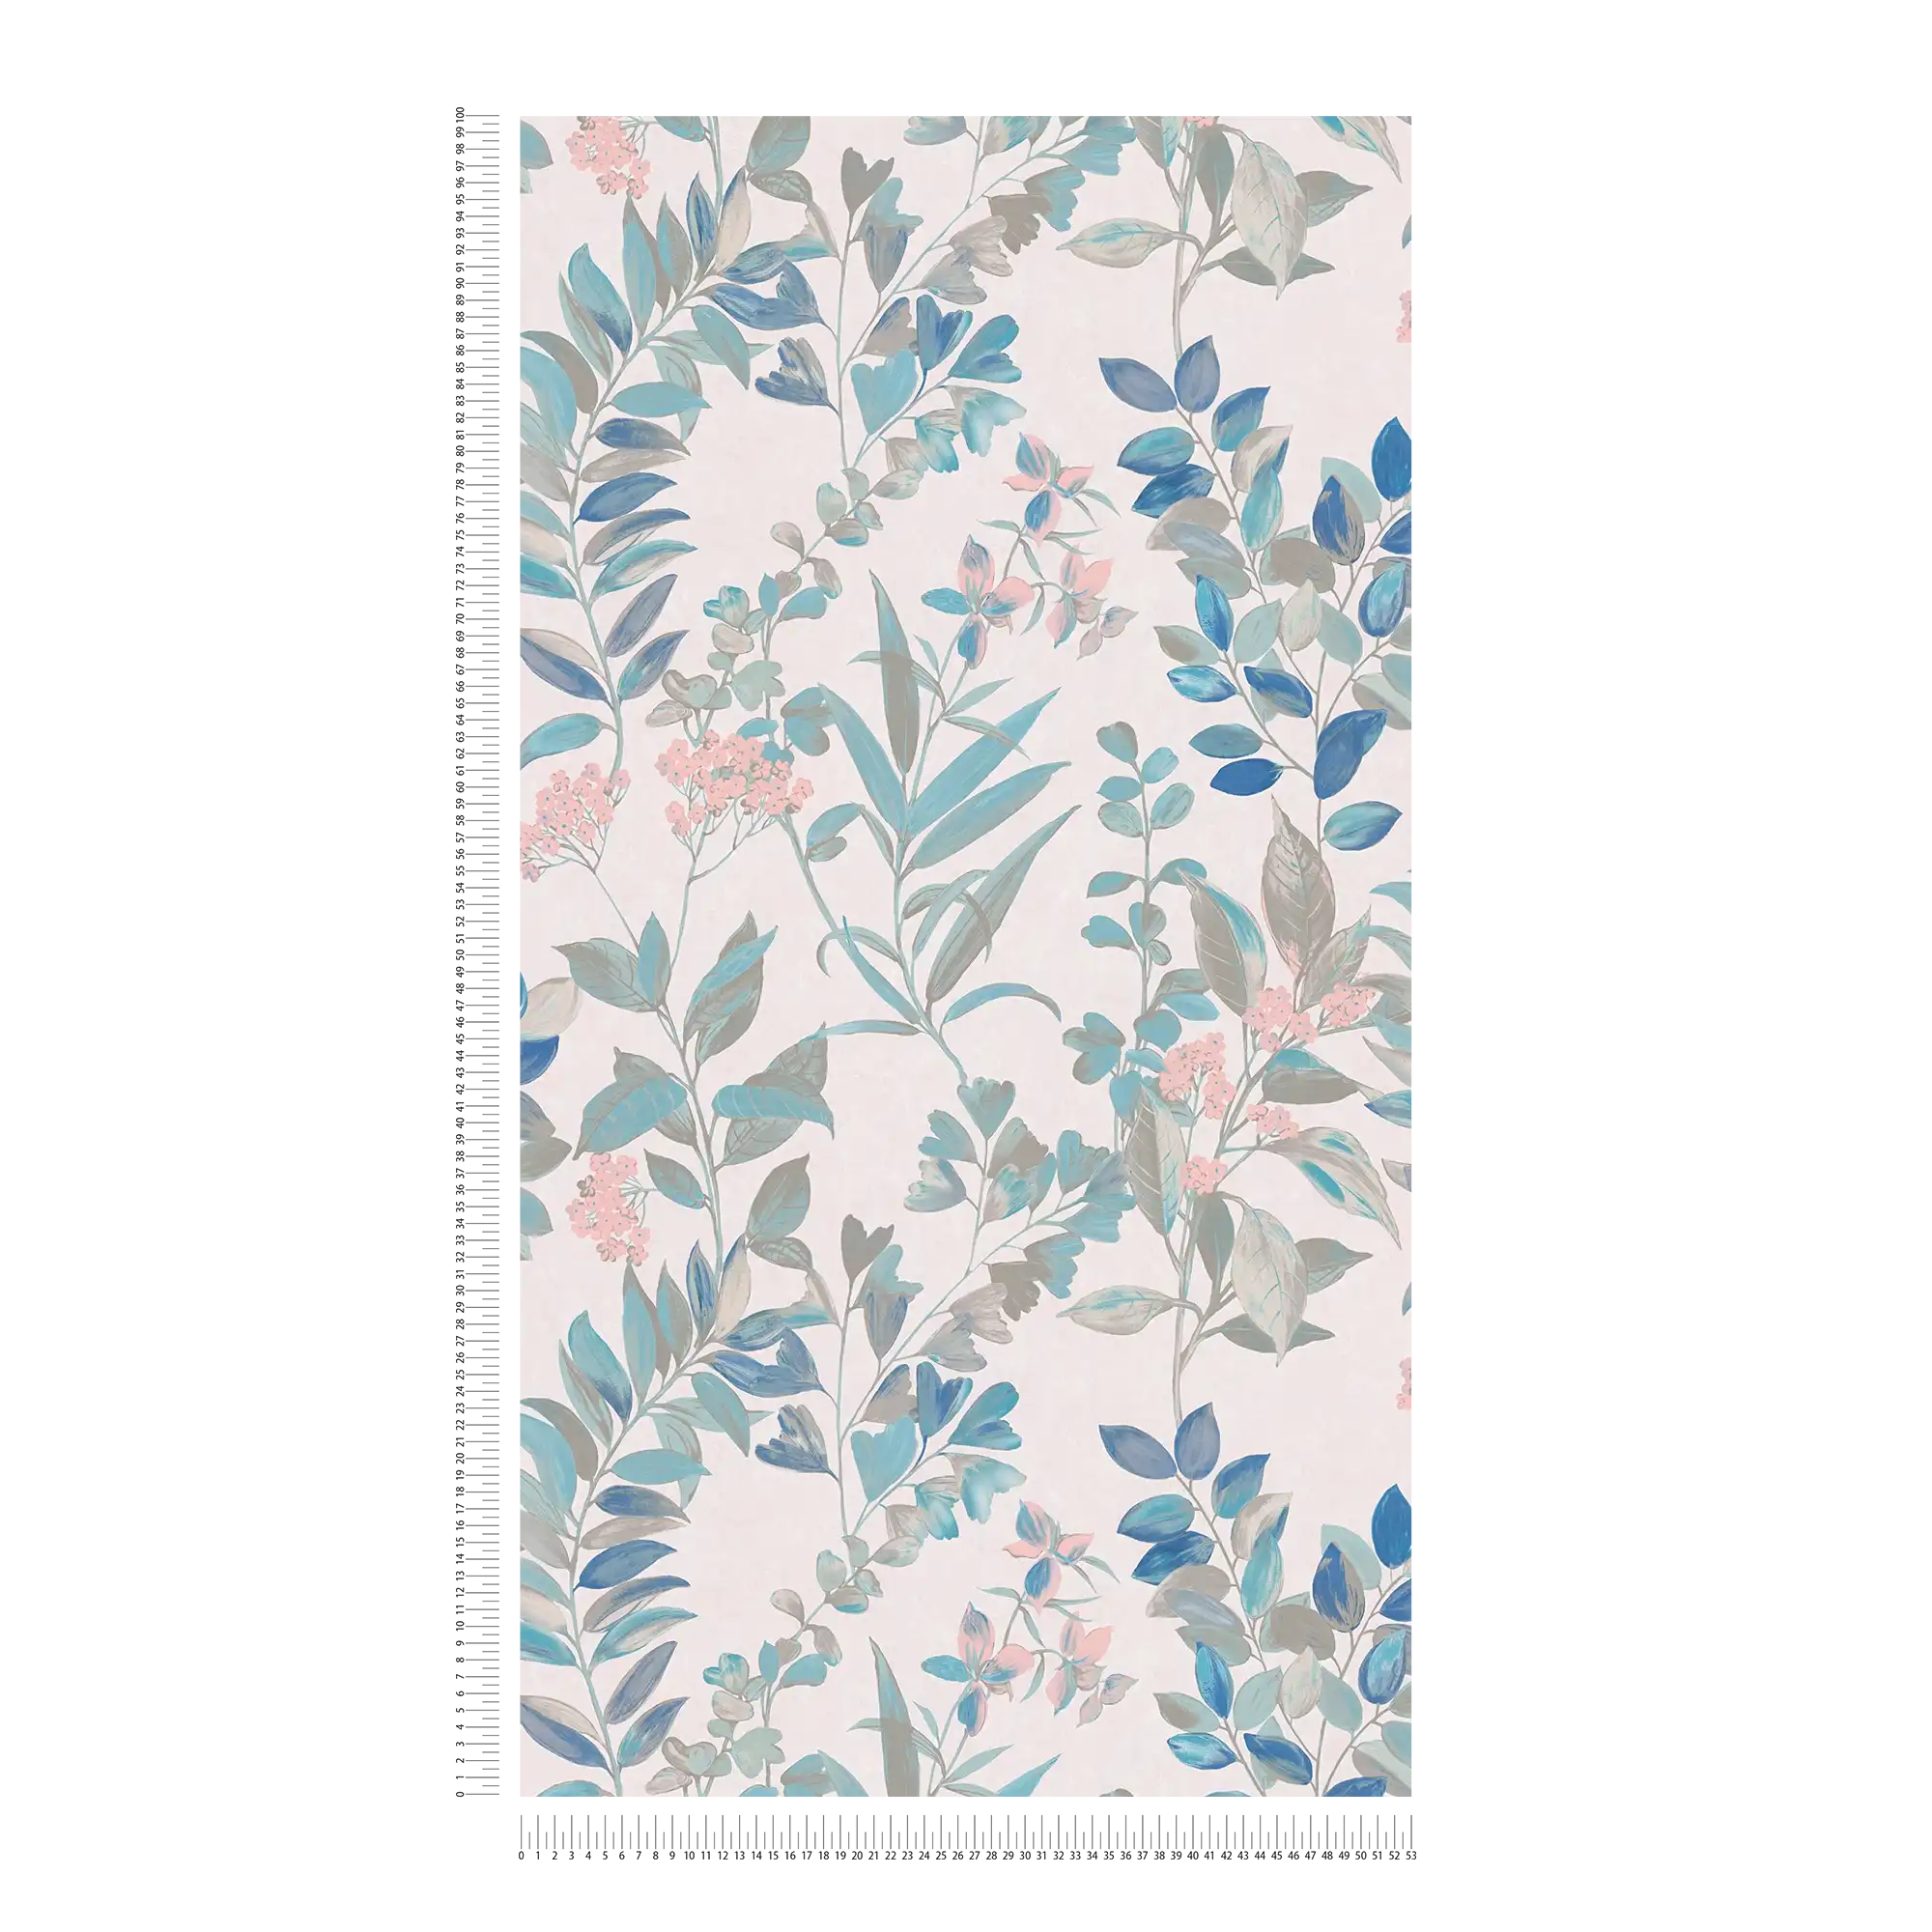             Papel pintado con motivos florales - multicolor, blanco, turquesa
        